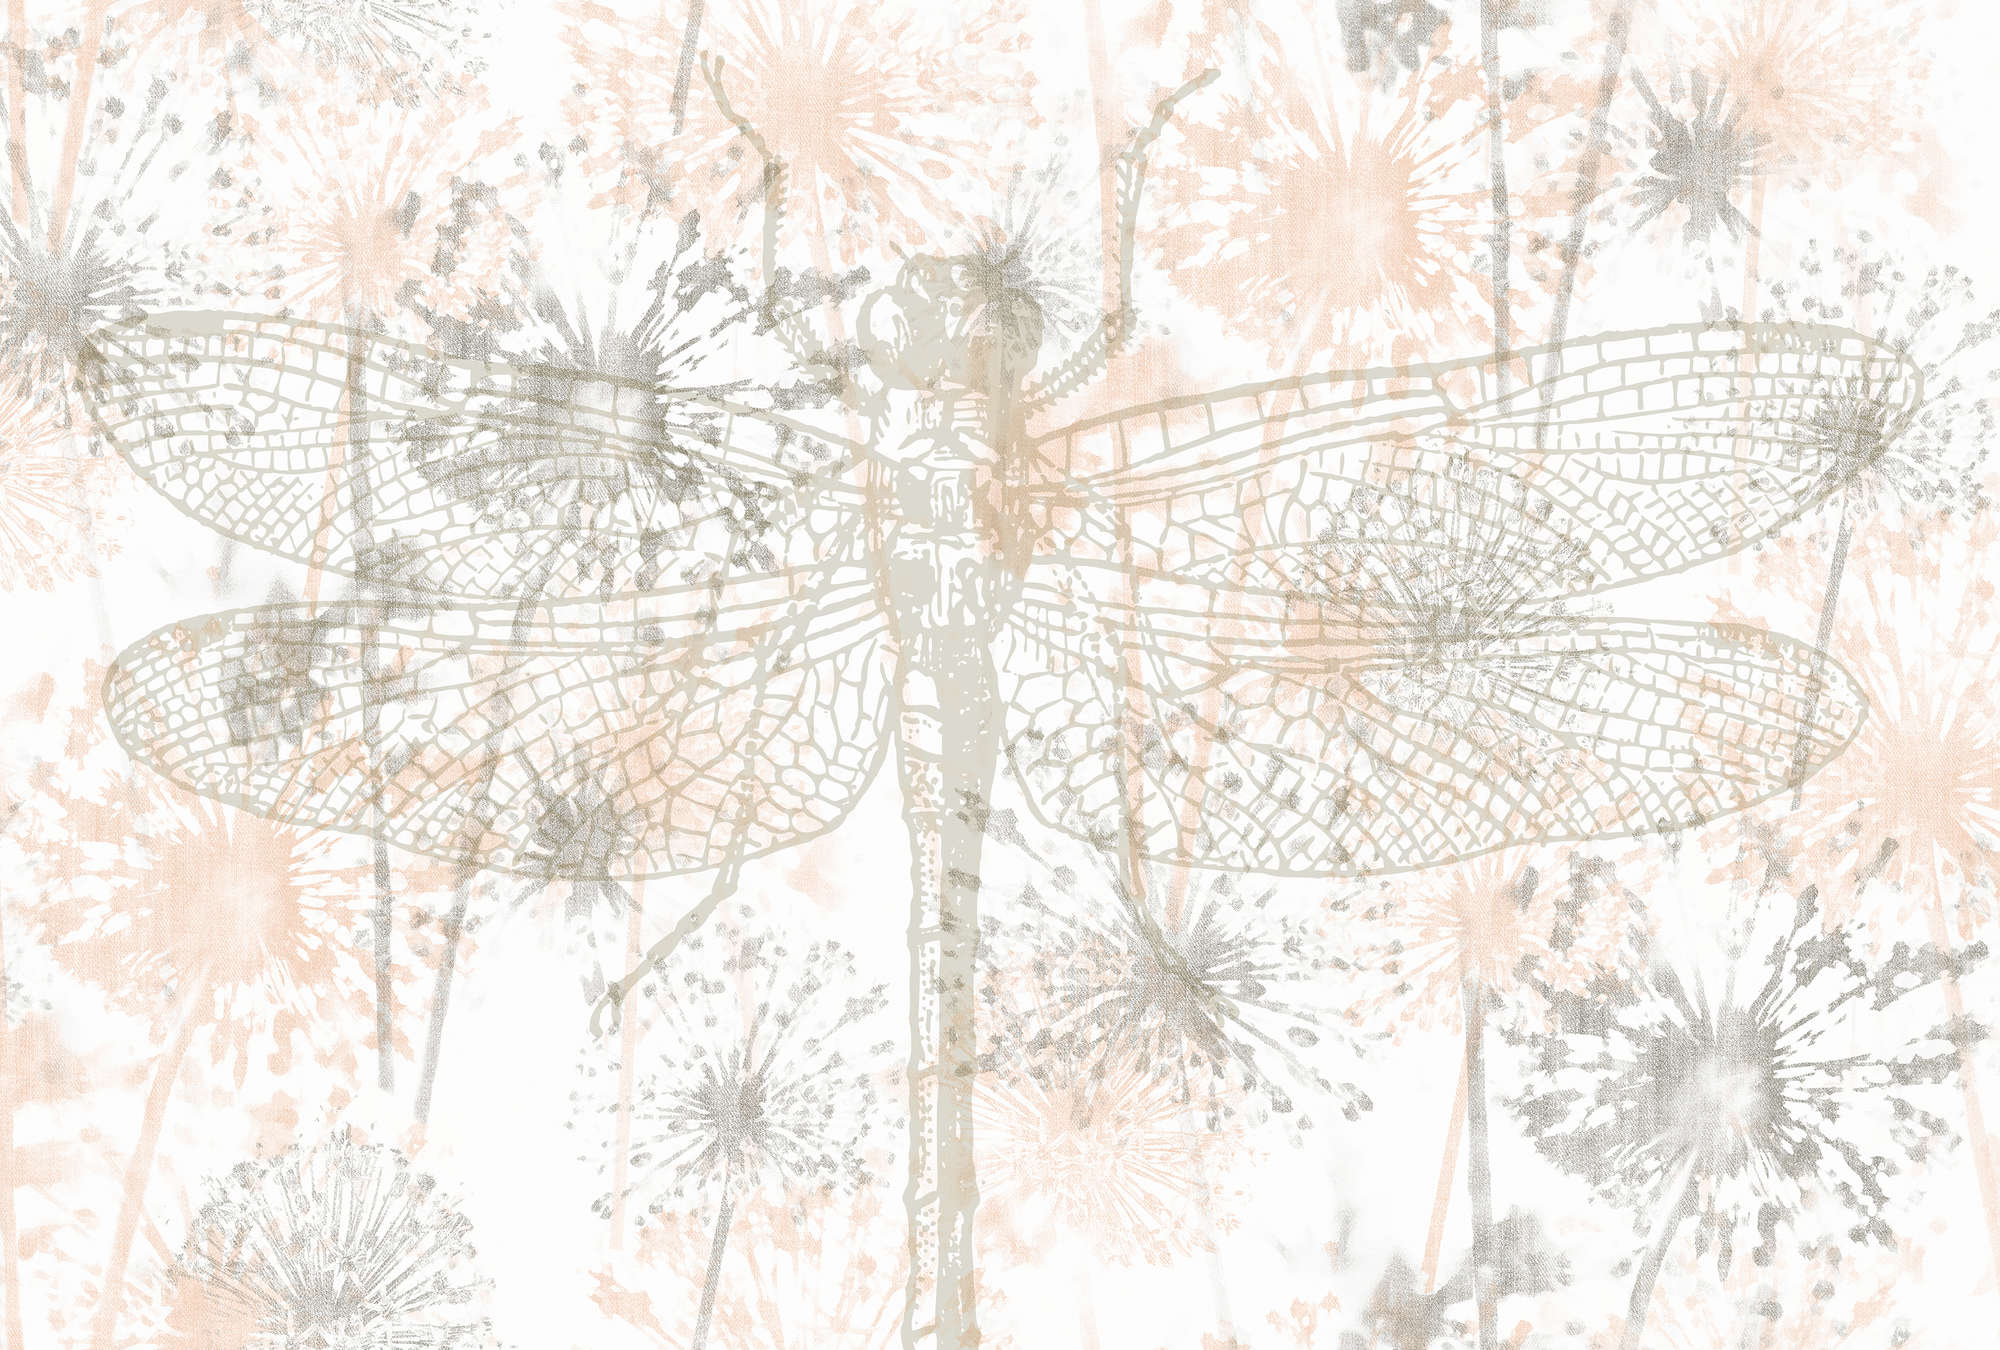             Muurschildering Libellen & Bloemen in grafisch ontwerp - Beige, Grijs, Wit
        